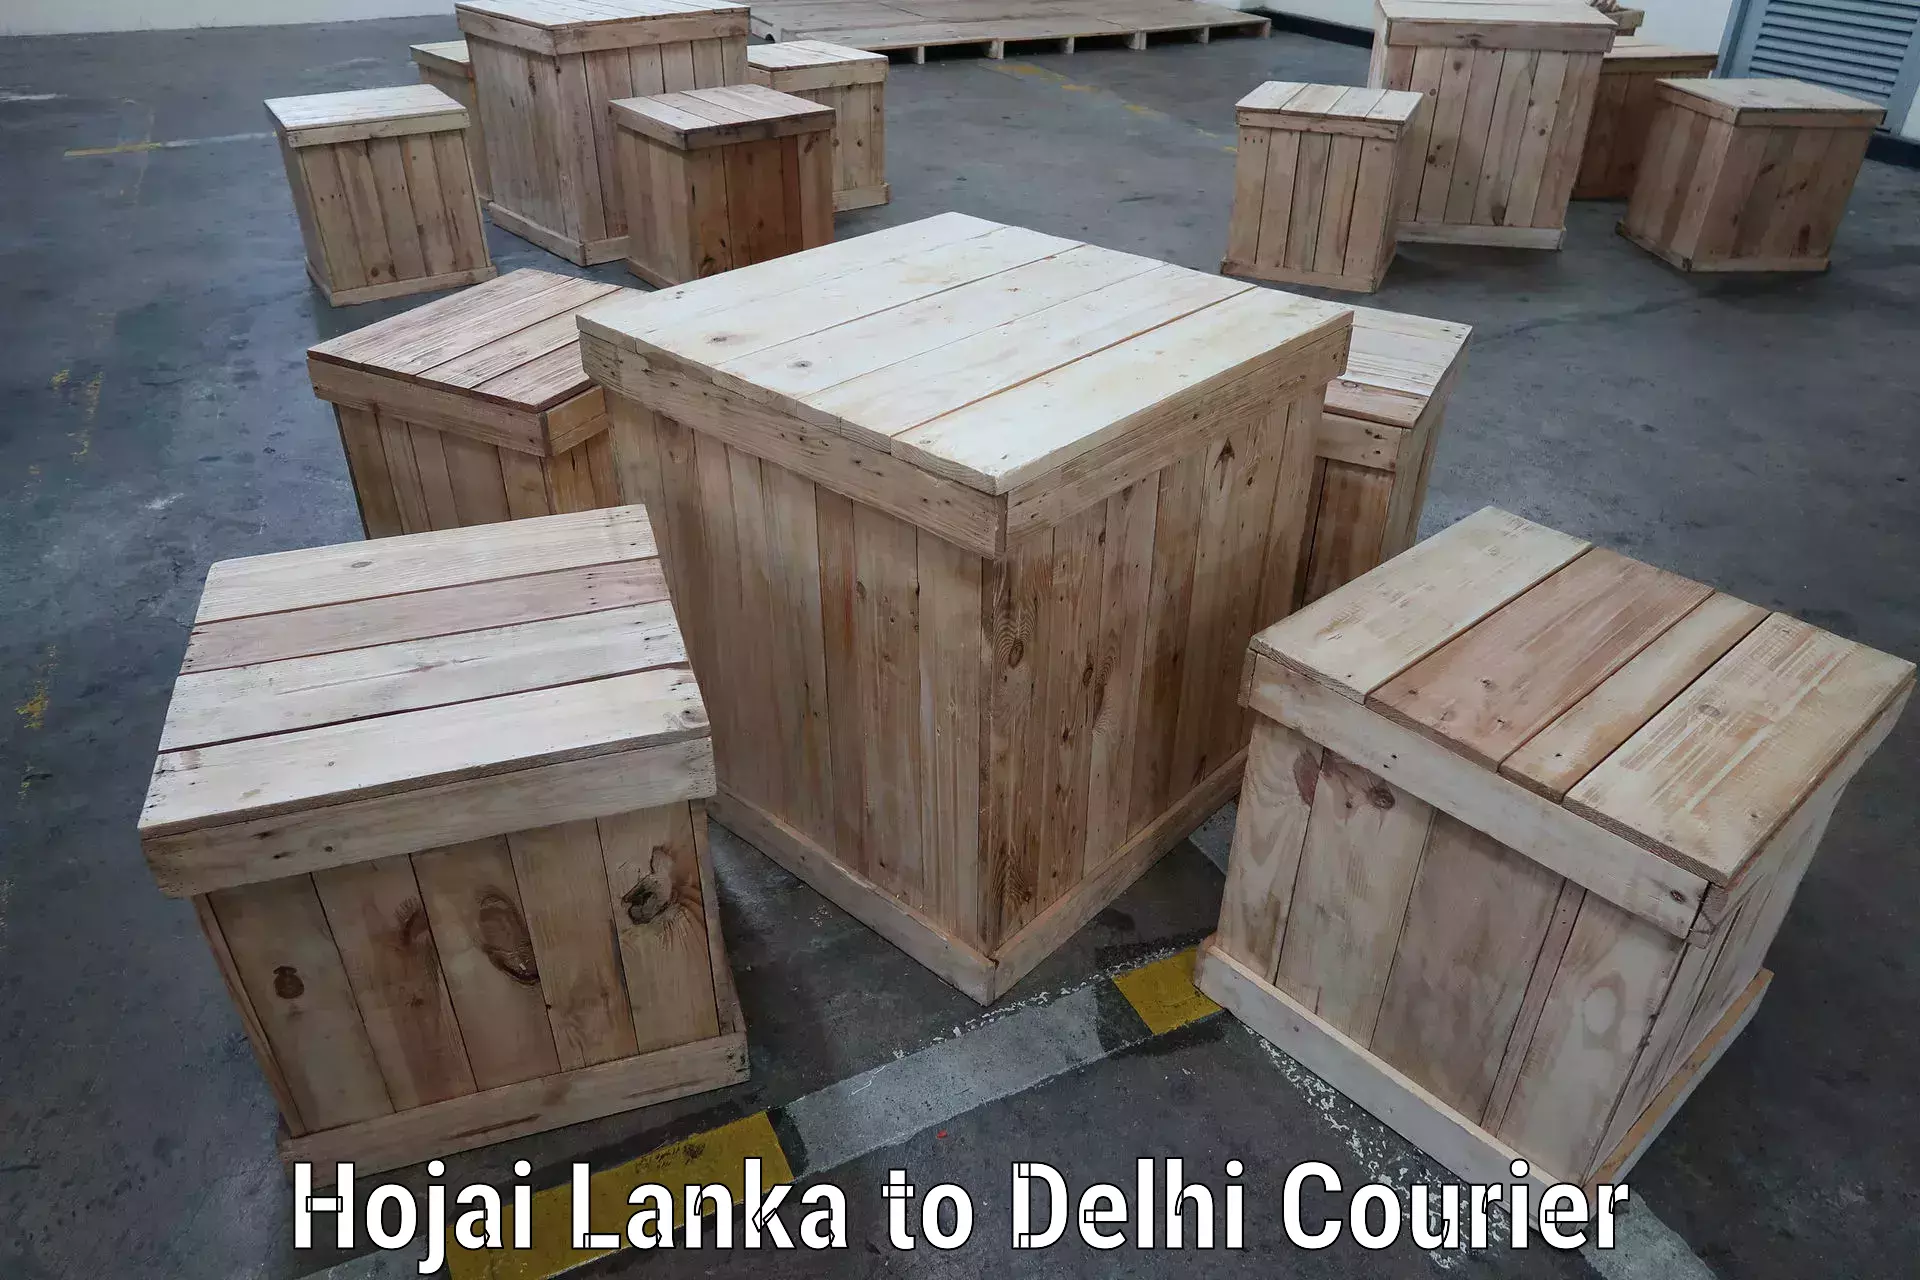 Enhanced shipping experience Hojai Lanka to Jawaharlal Nehru University New Delhi